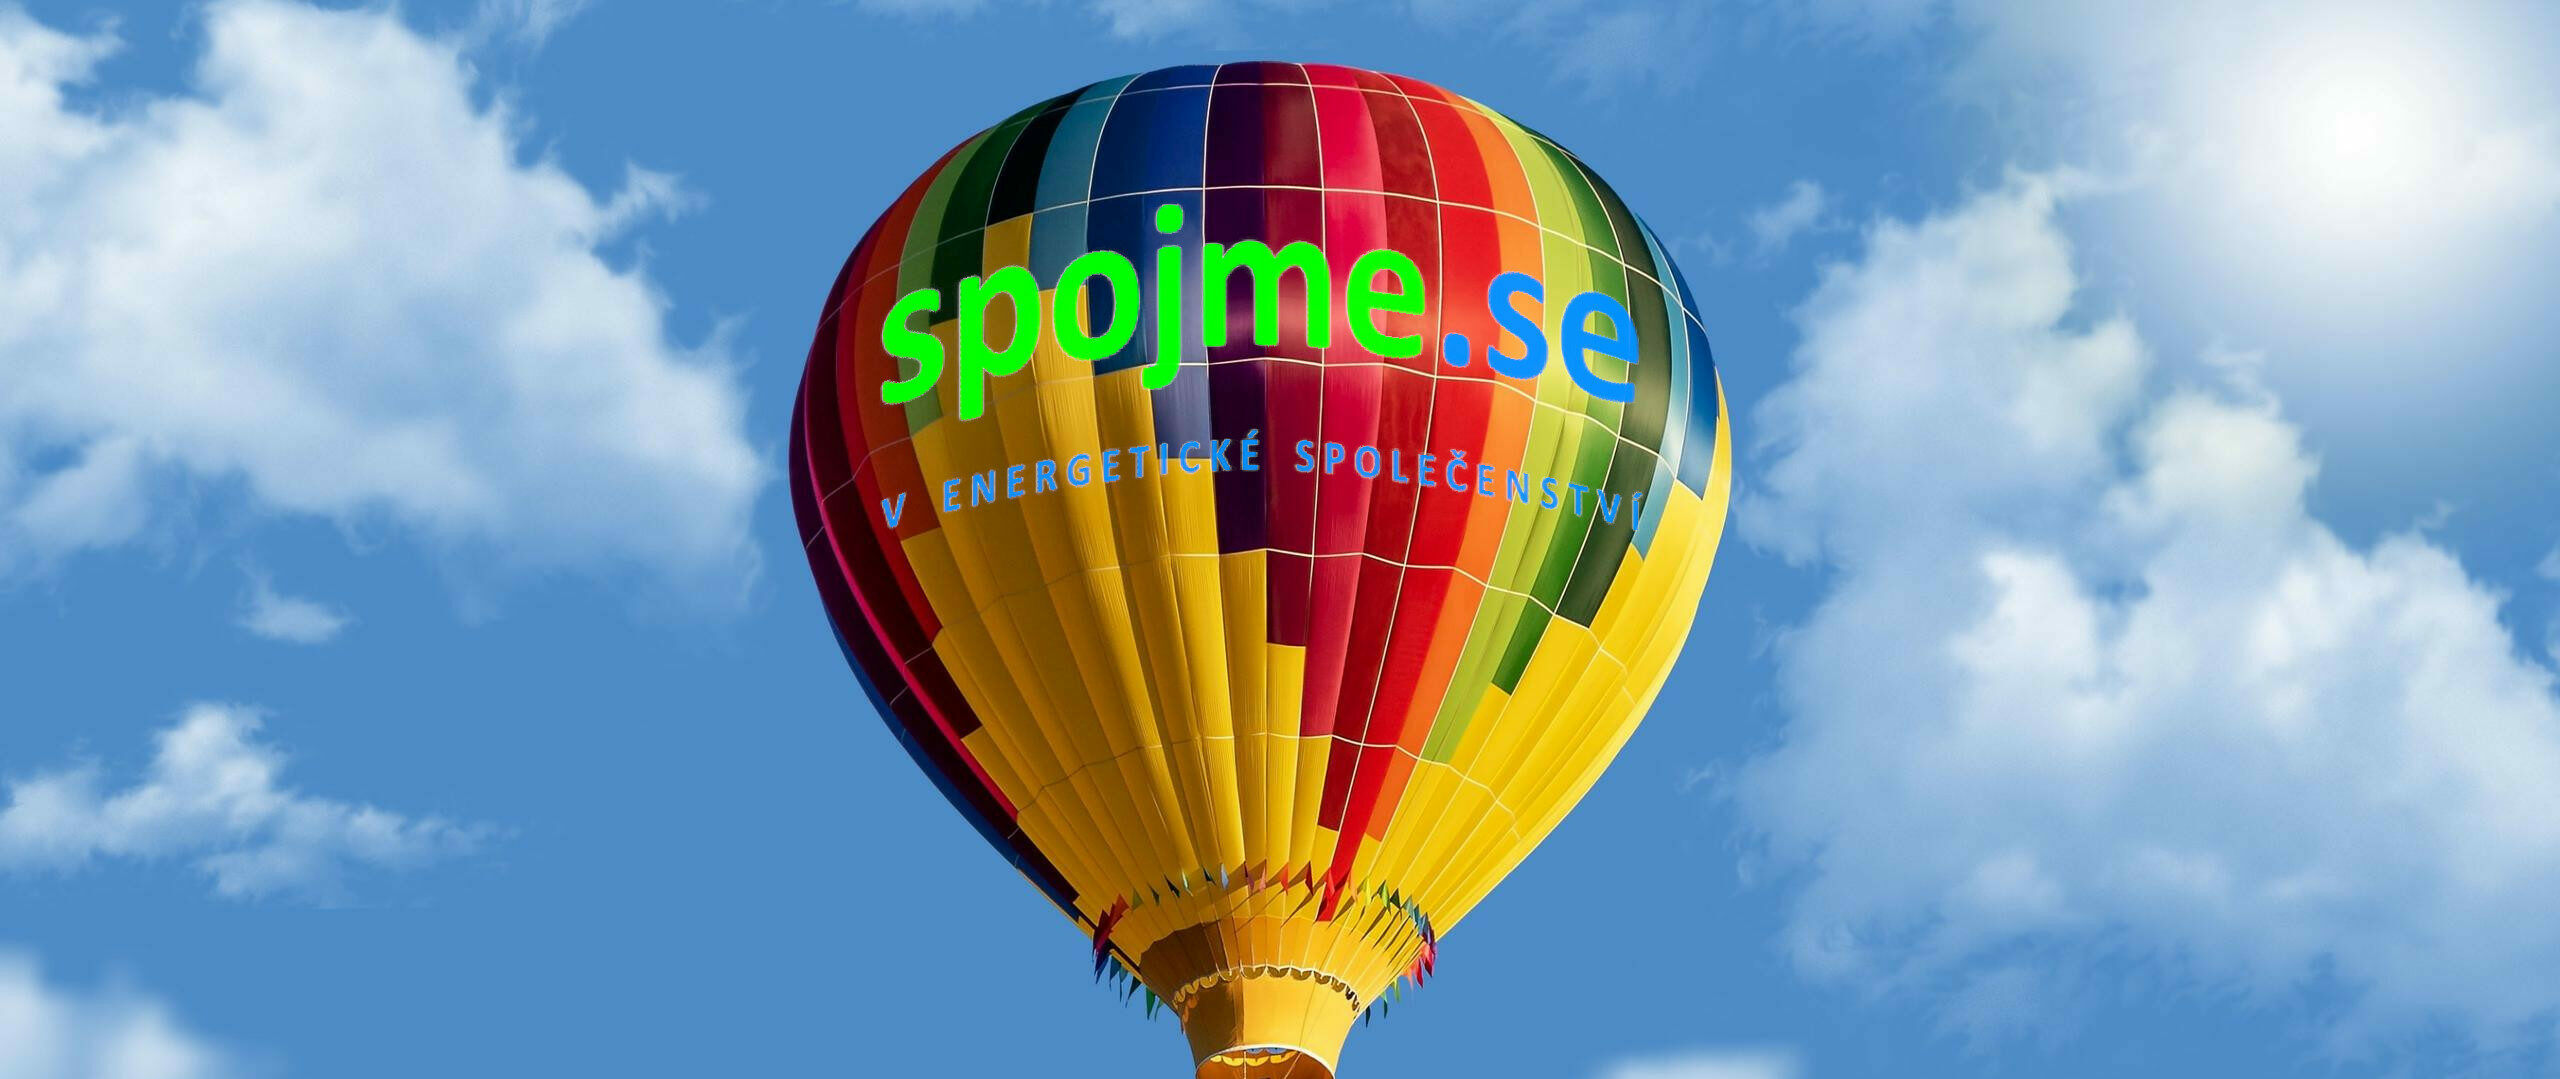 colorful-hot-air-balloon-wallpaper-2560x1600_final.jpg